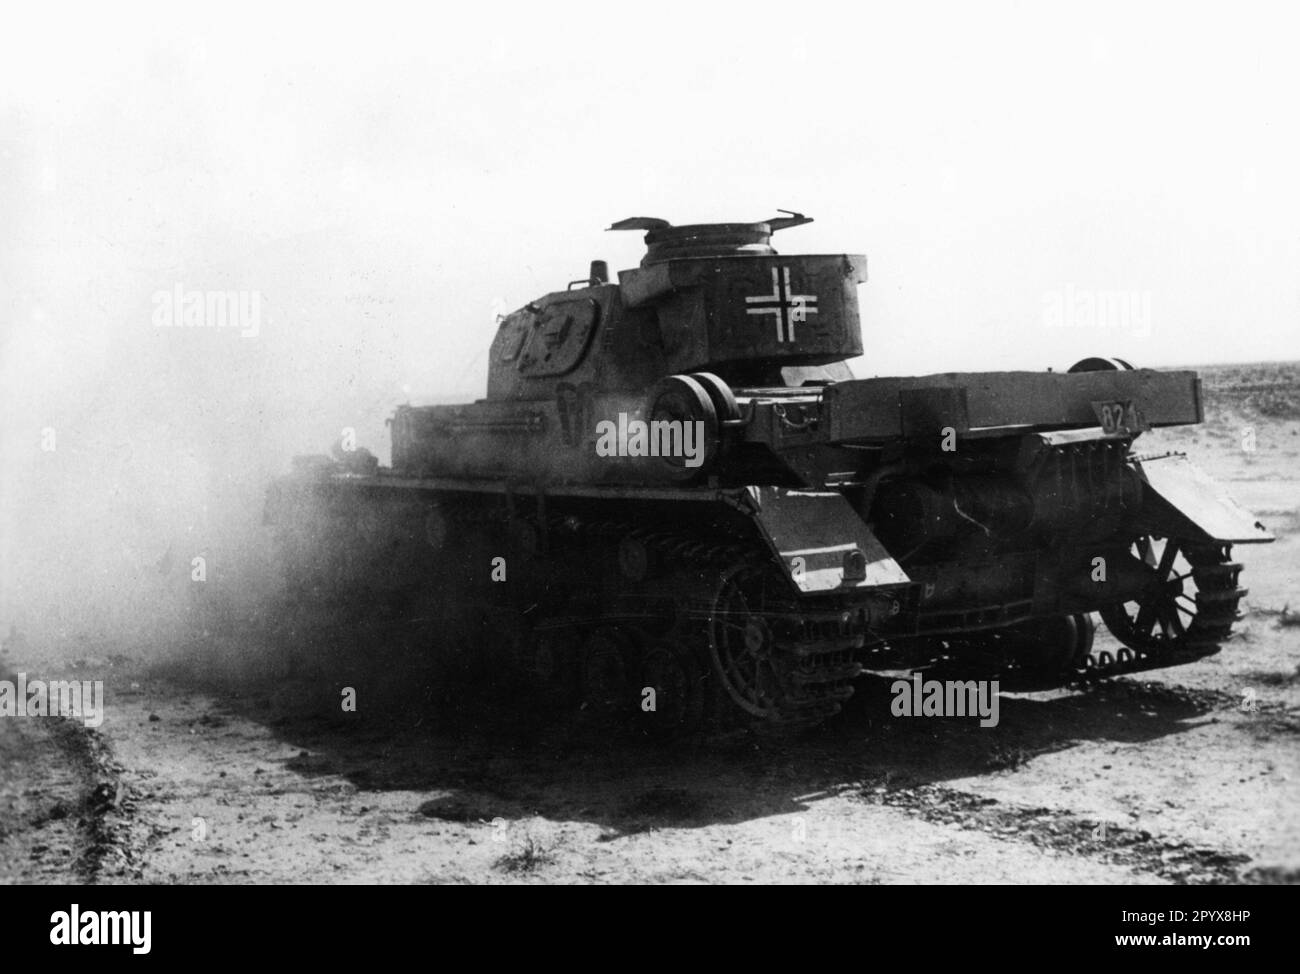 Deutscher Panzer IV des Afrika-Korps in der ägyptischen Wüste. Foto: Borchardt. [Maschinelle Übersetzung] Stockfoto